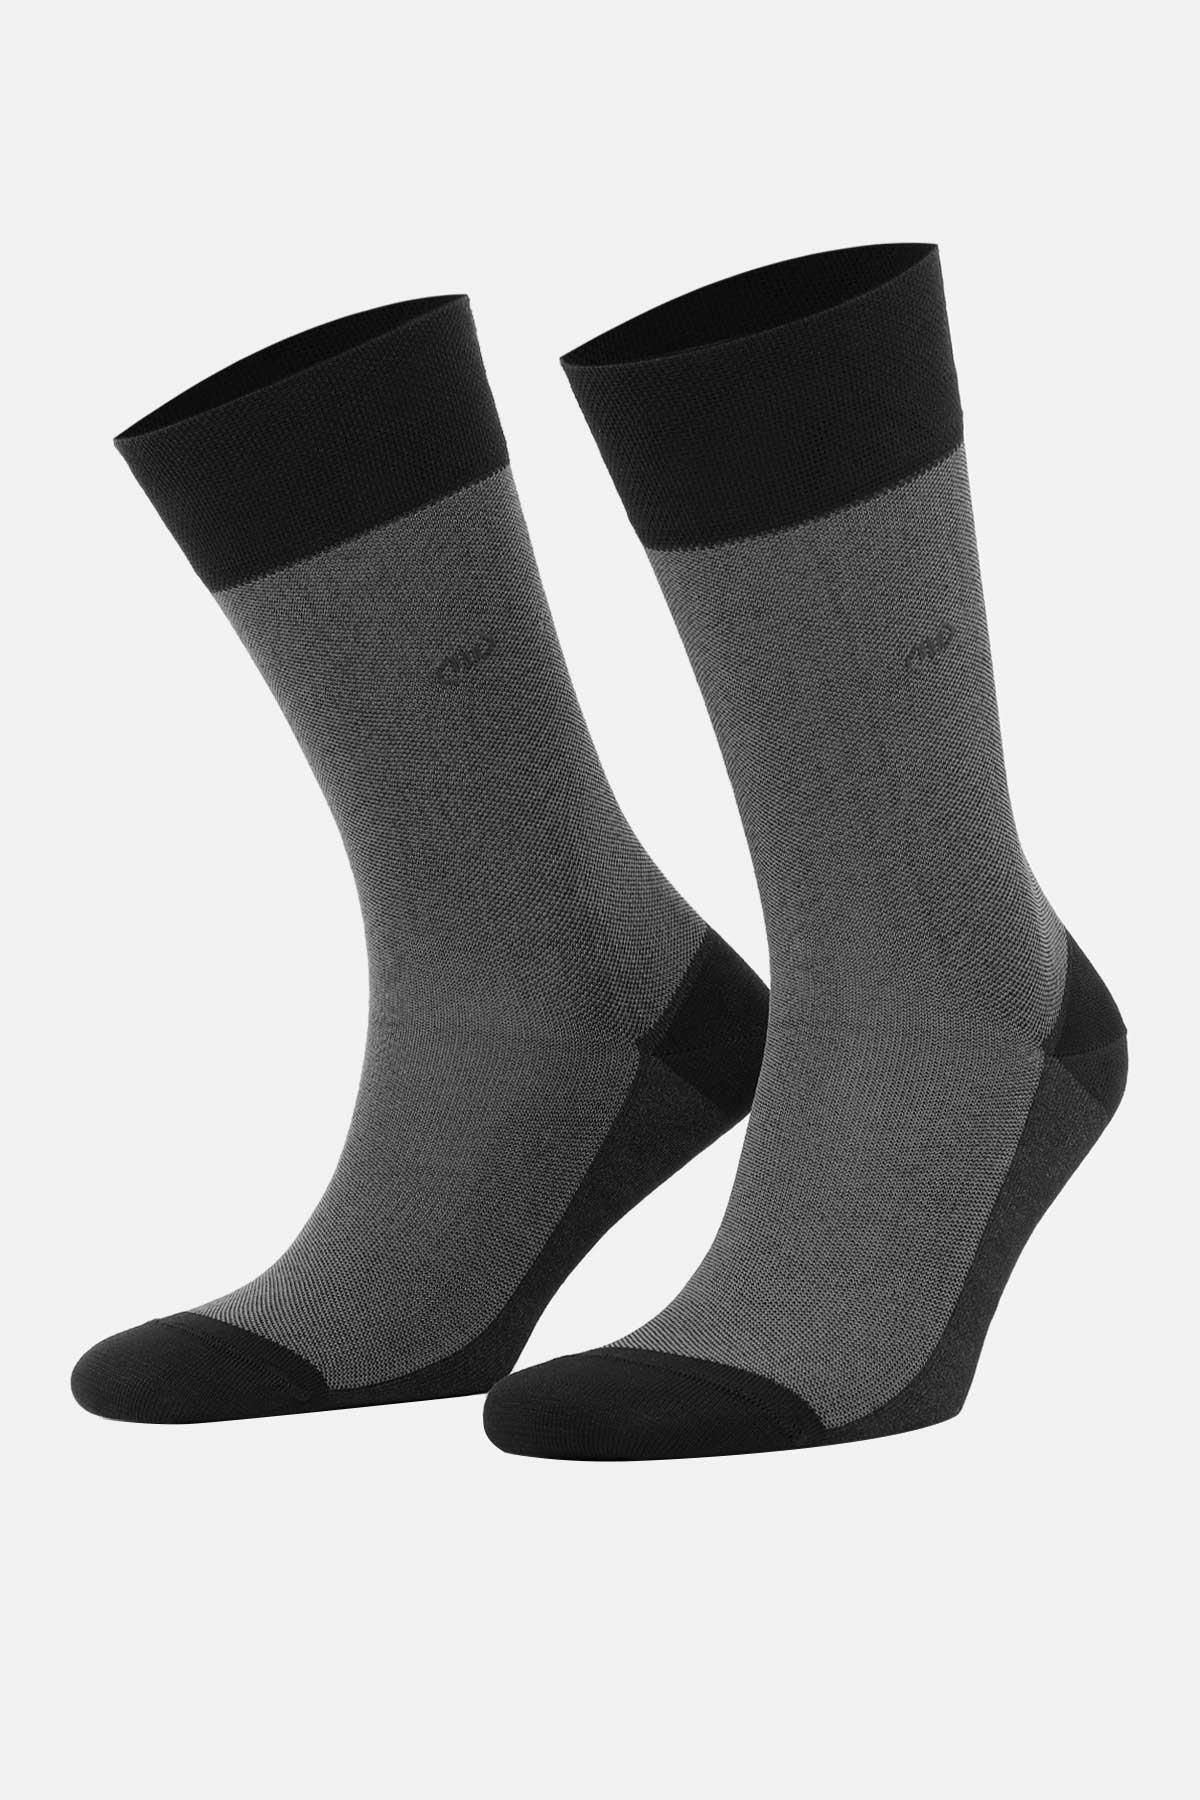 Mısırlı Erkek Merserize Tekli Siyah Yazlık Soket Çorap M 67001 S